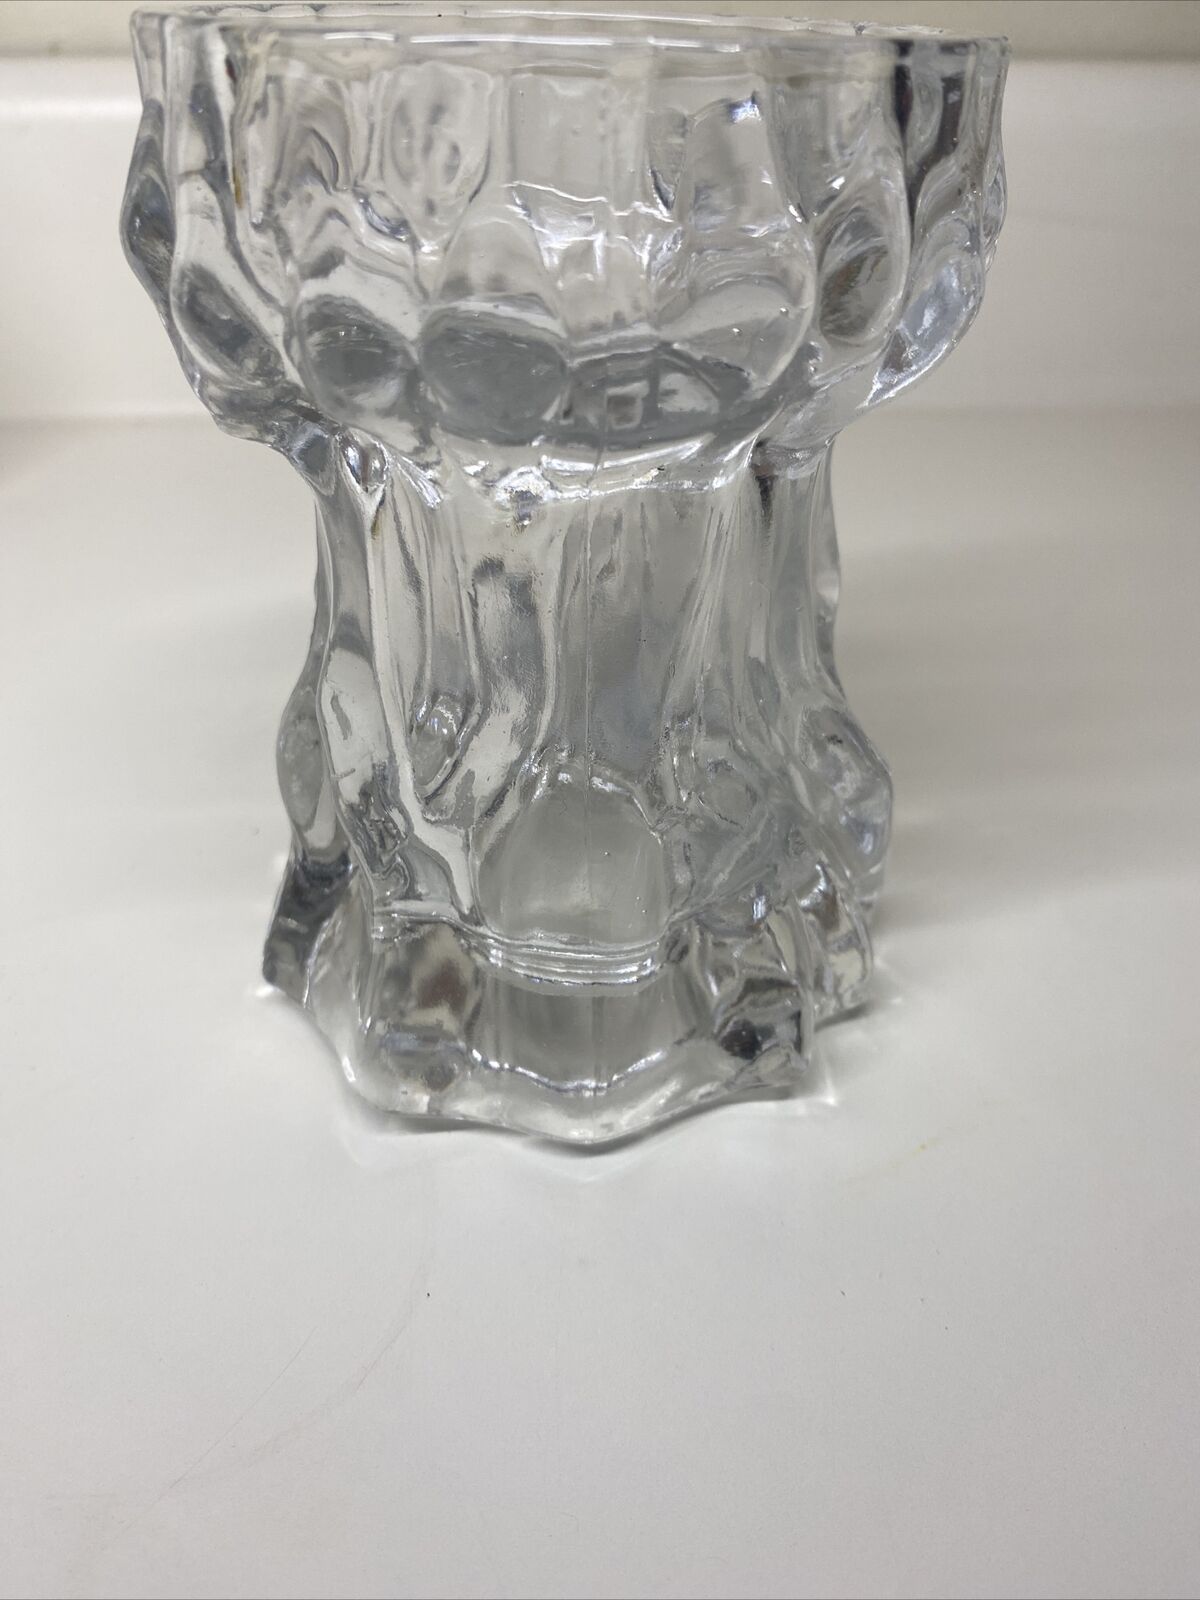 Vintage Ingrid Clear Glass Bark Vase Candle Holder Made in Germany Art Glass